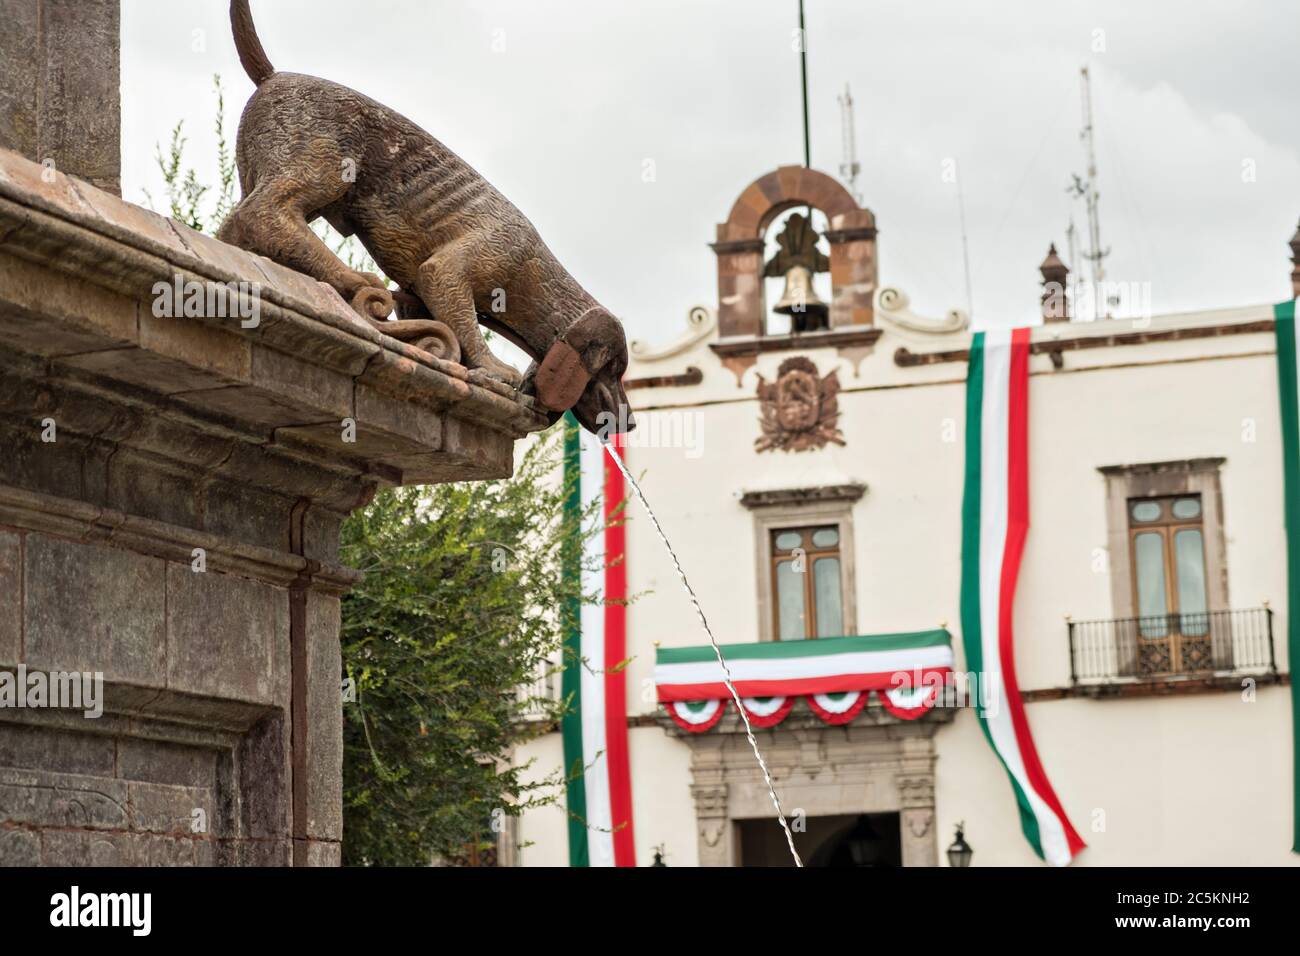 File:Perros en el Parque España, Ciudad de México.jpg - Wikimedia Commons